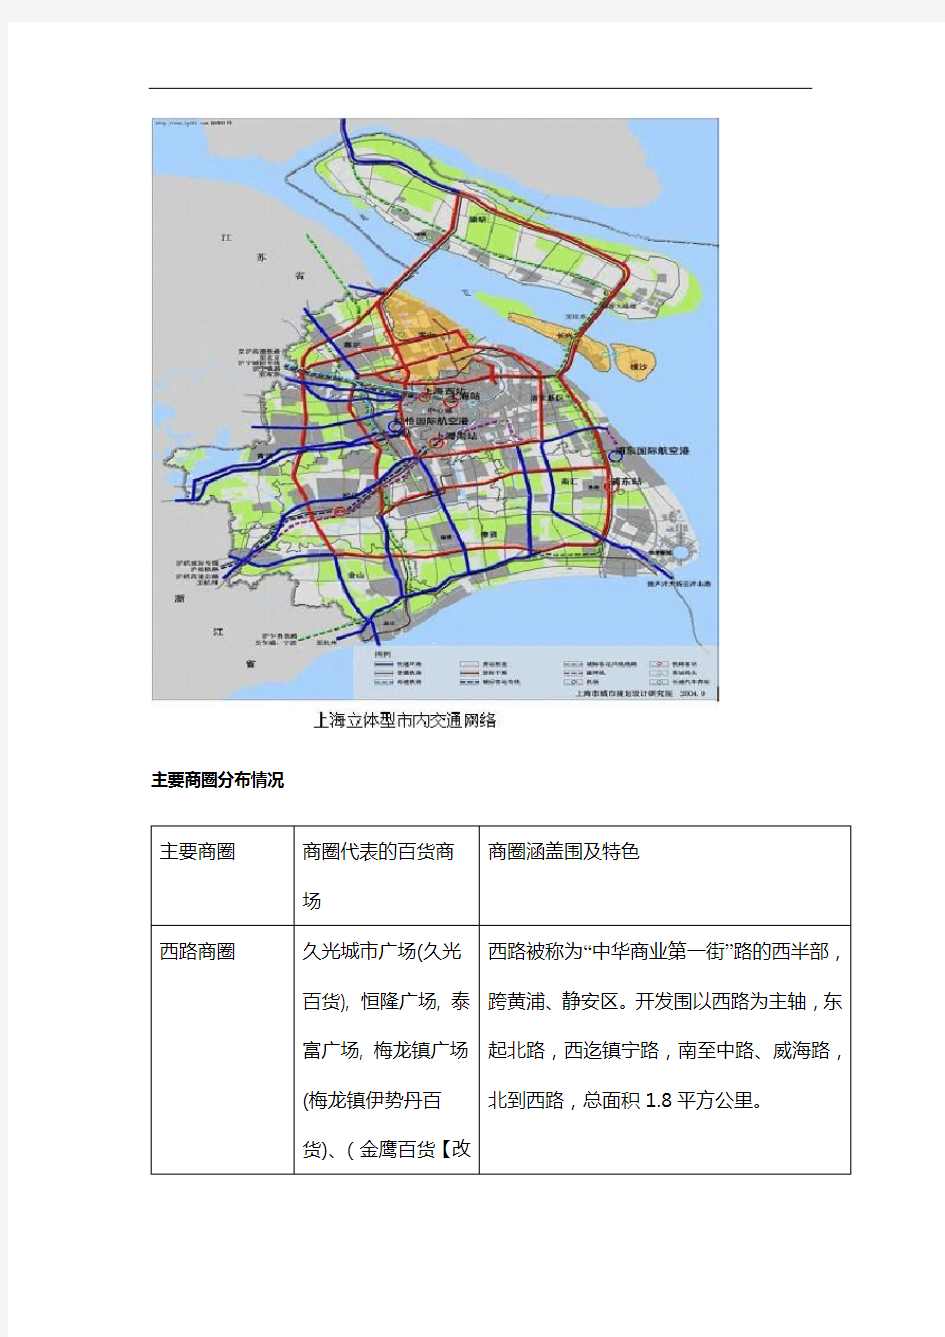 上海主要商圈分布情况